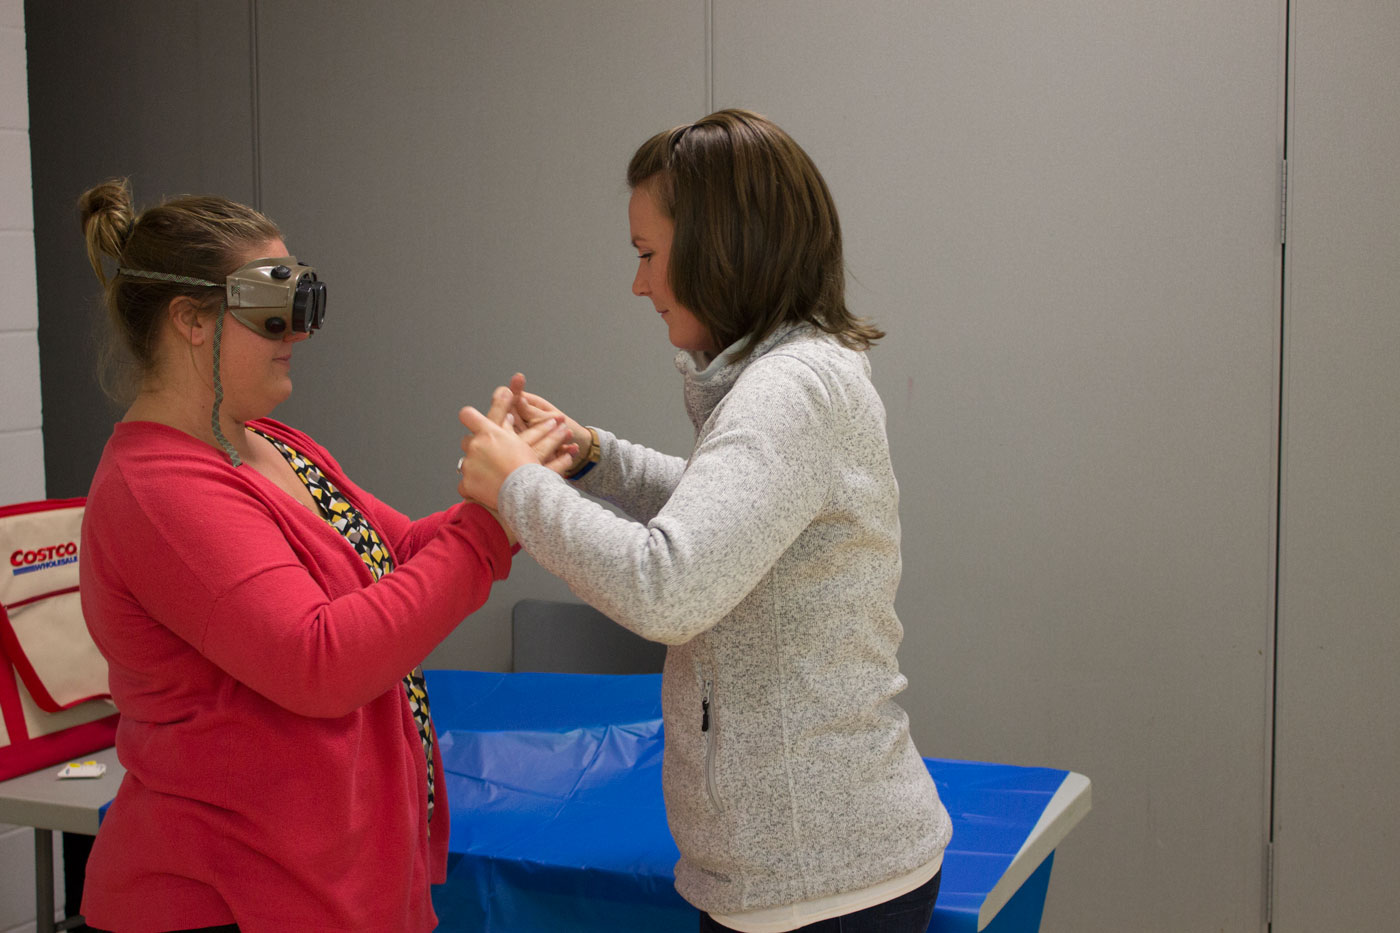 Deux femmes sont debout l’une en face de l’autre et font un exercice de simulation. Une femme porte des lunettes de simulation alors qu’elles communiquent par le langage gestuel avec mains jointes.